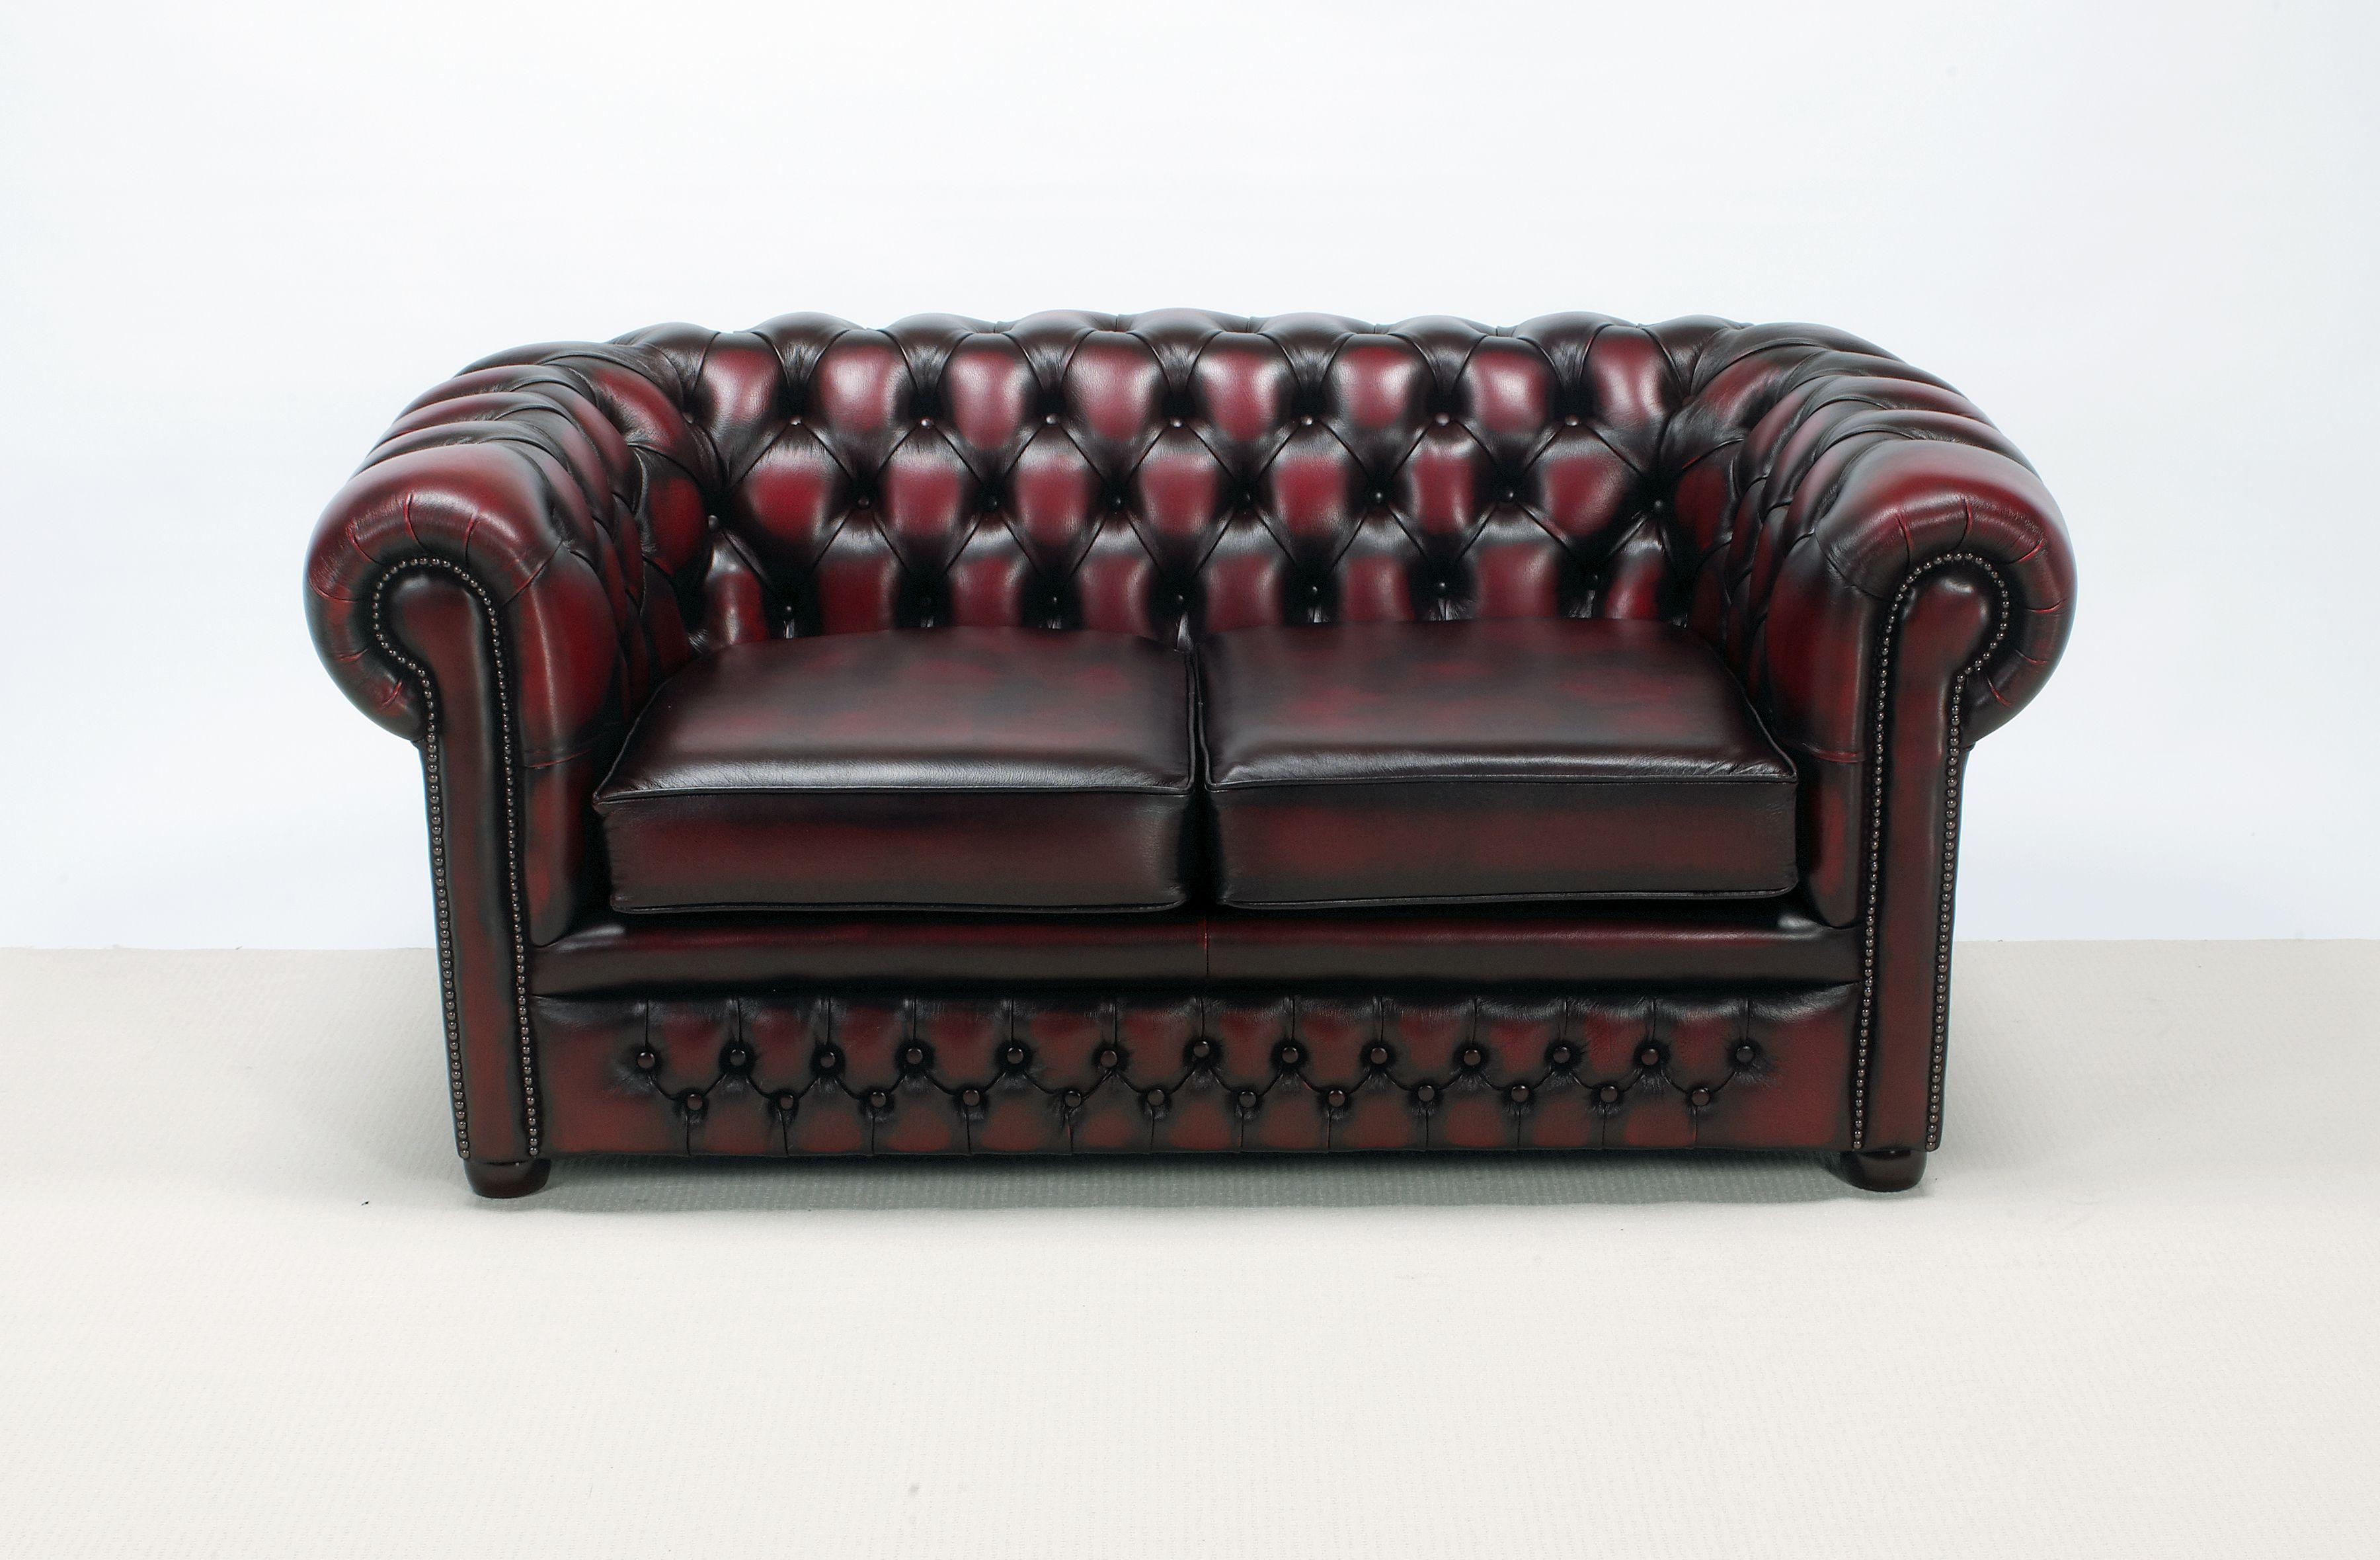 The Bolton Chesterfield Sofa-kanapa 2 osobowa